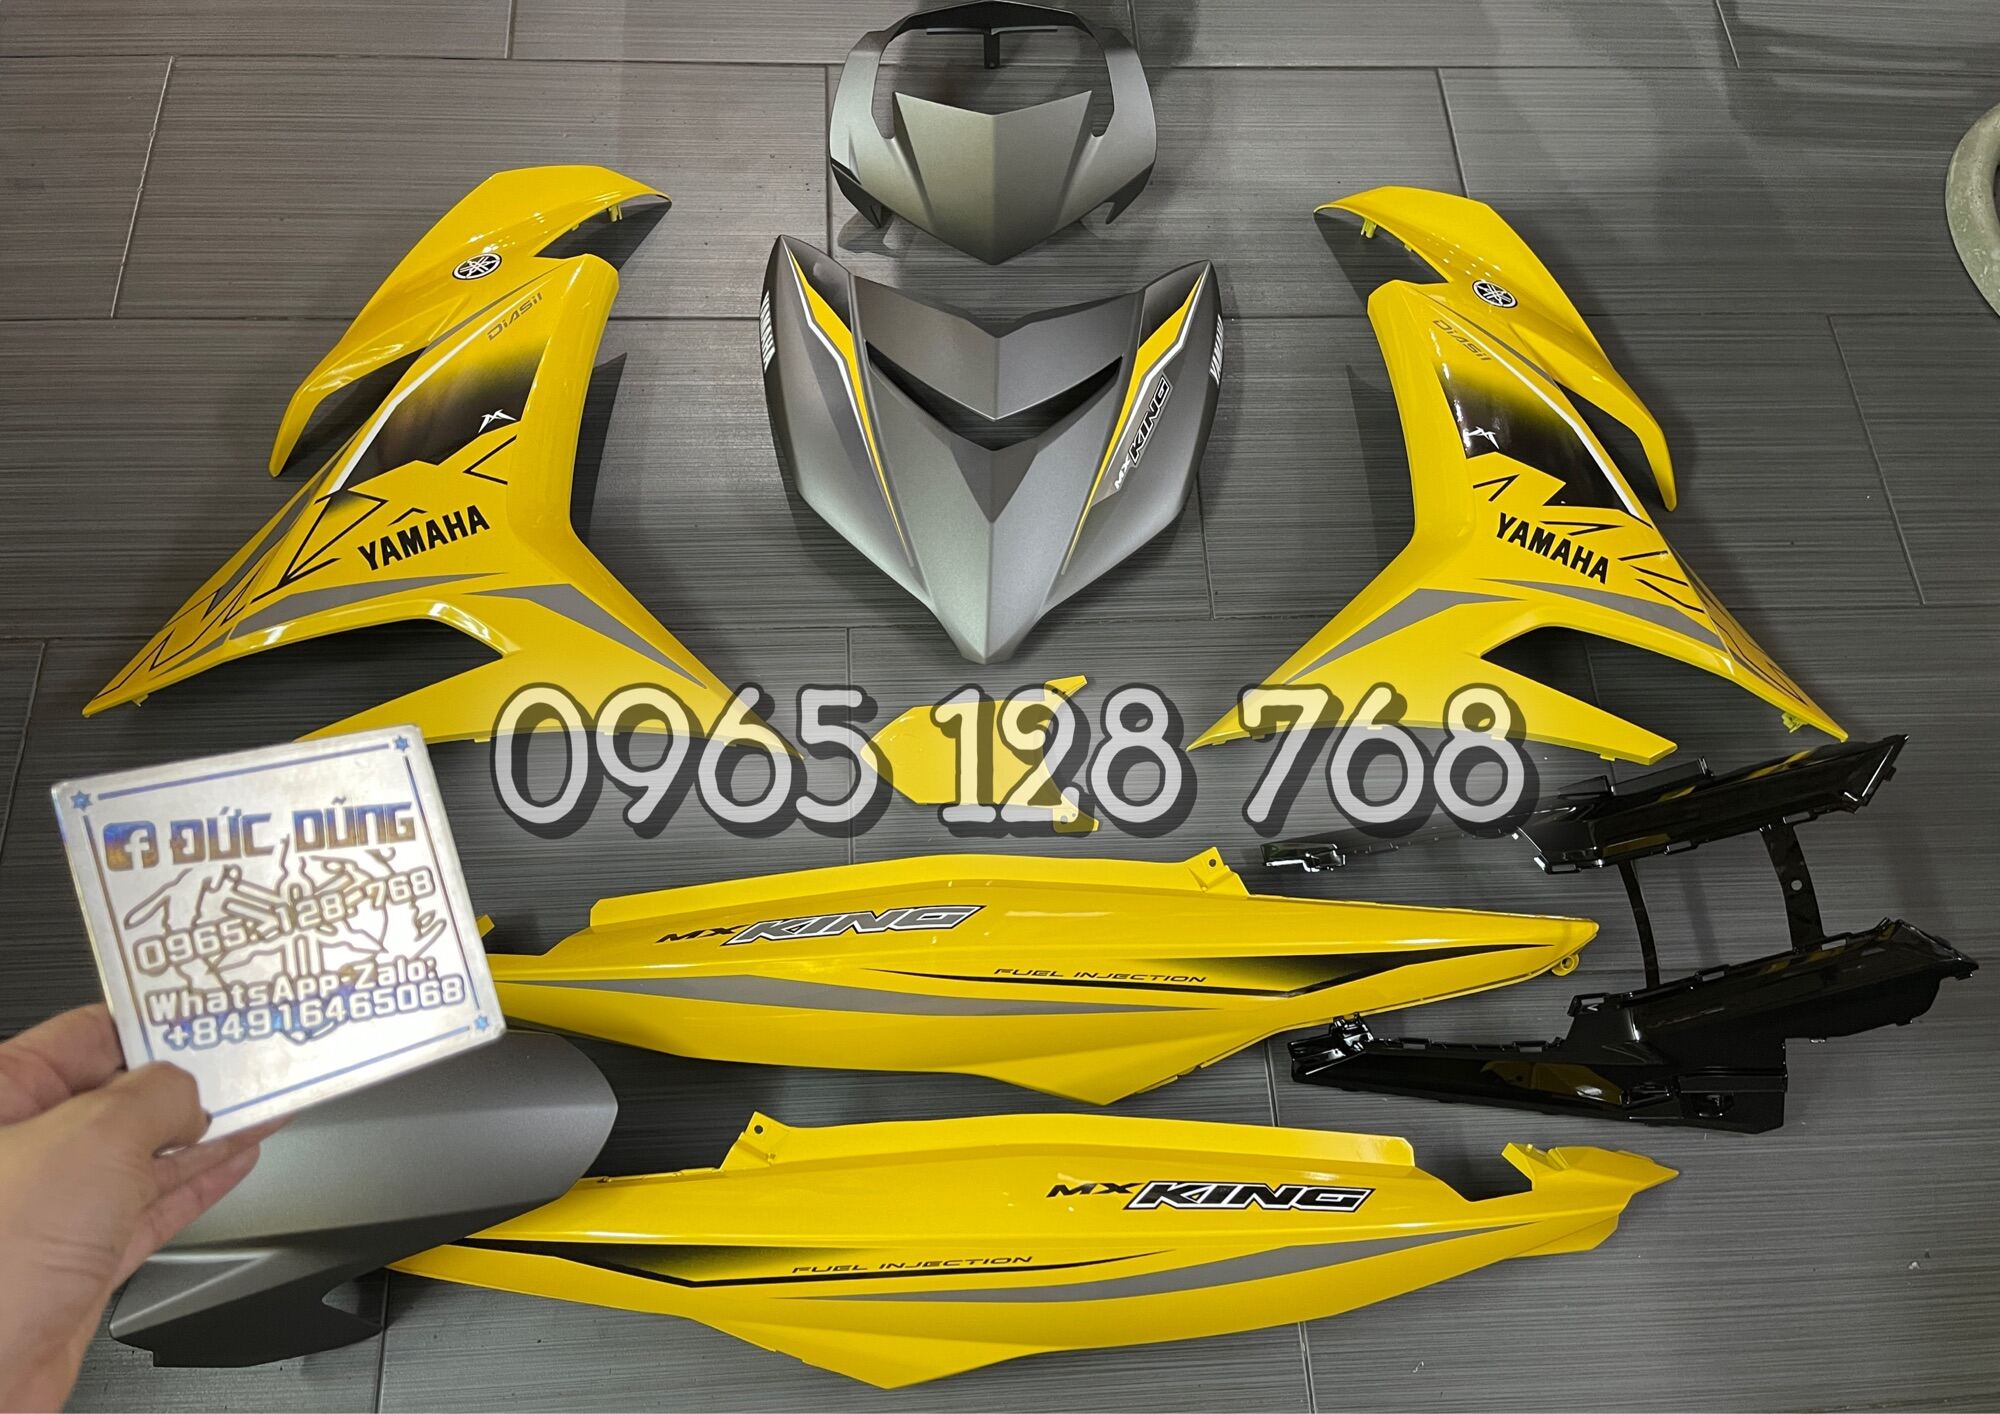 Giá xe MX King  Đánh giá chi tiết về mẫu xe Yamaha MX King  Kinh Doanh Xe  24h